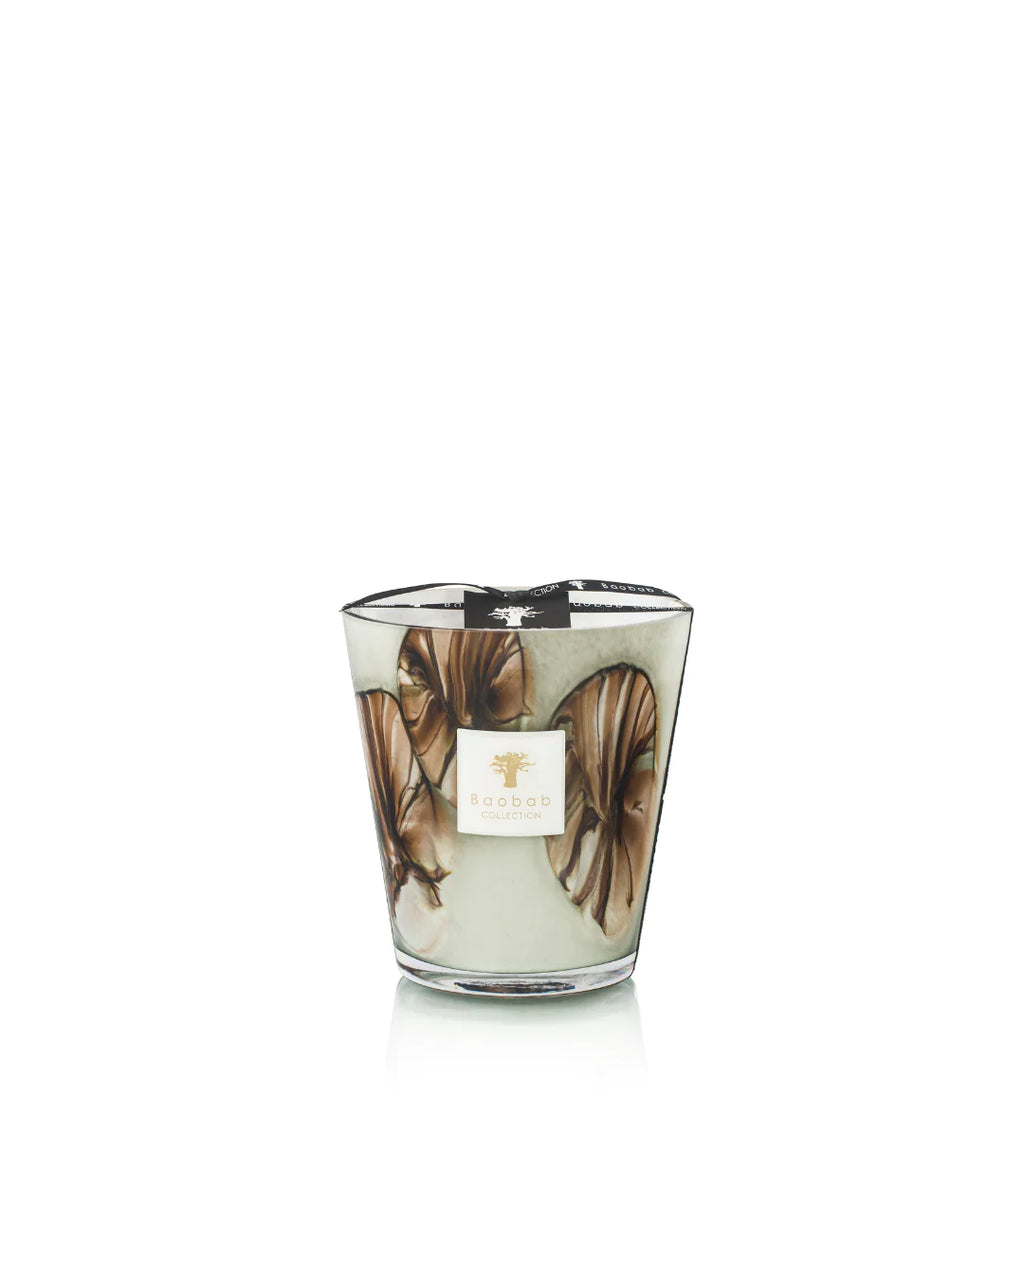 Bougie parfumé de la marque Baobab, disponible chez I.D DECO Marseille en retrait boutique ou en livraison à domicile